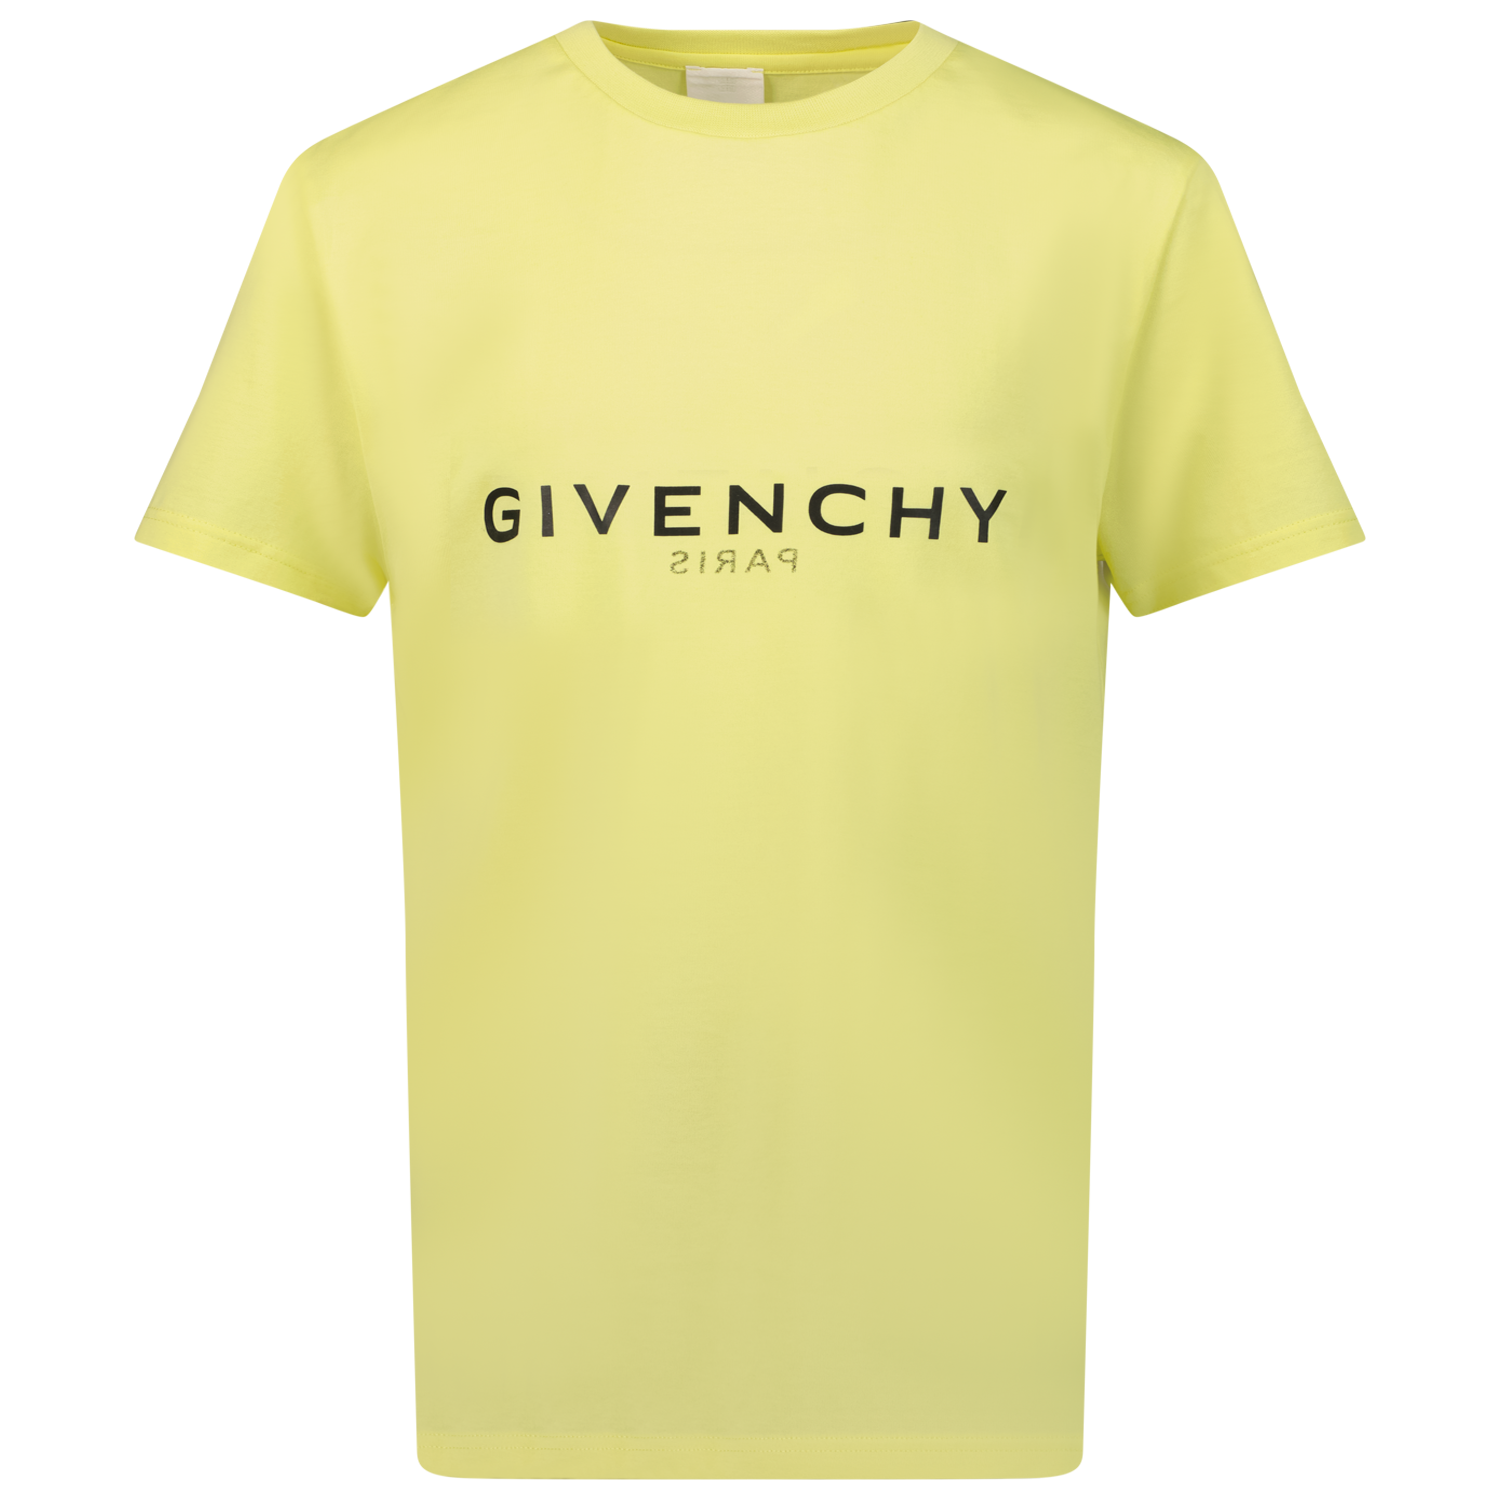 Bild von Givenchy H15244 Kindershirt Limette